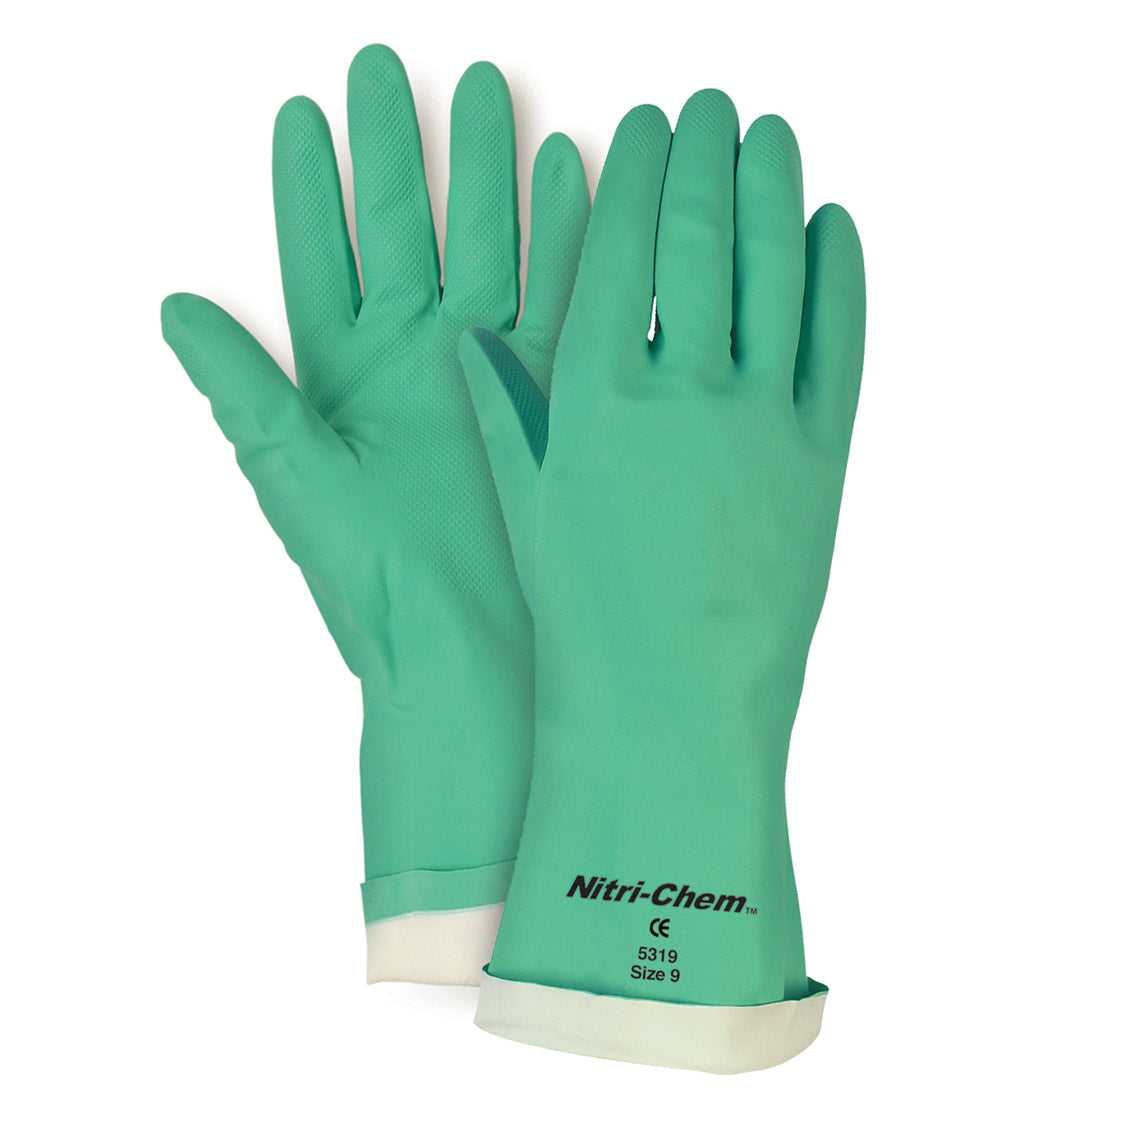 Memphis Nitri-Chem Flock Lined 15 mil Nitrile Gloves, 5319, 5320 & 5321